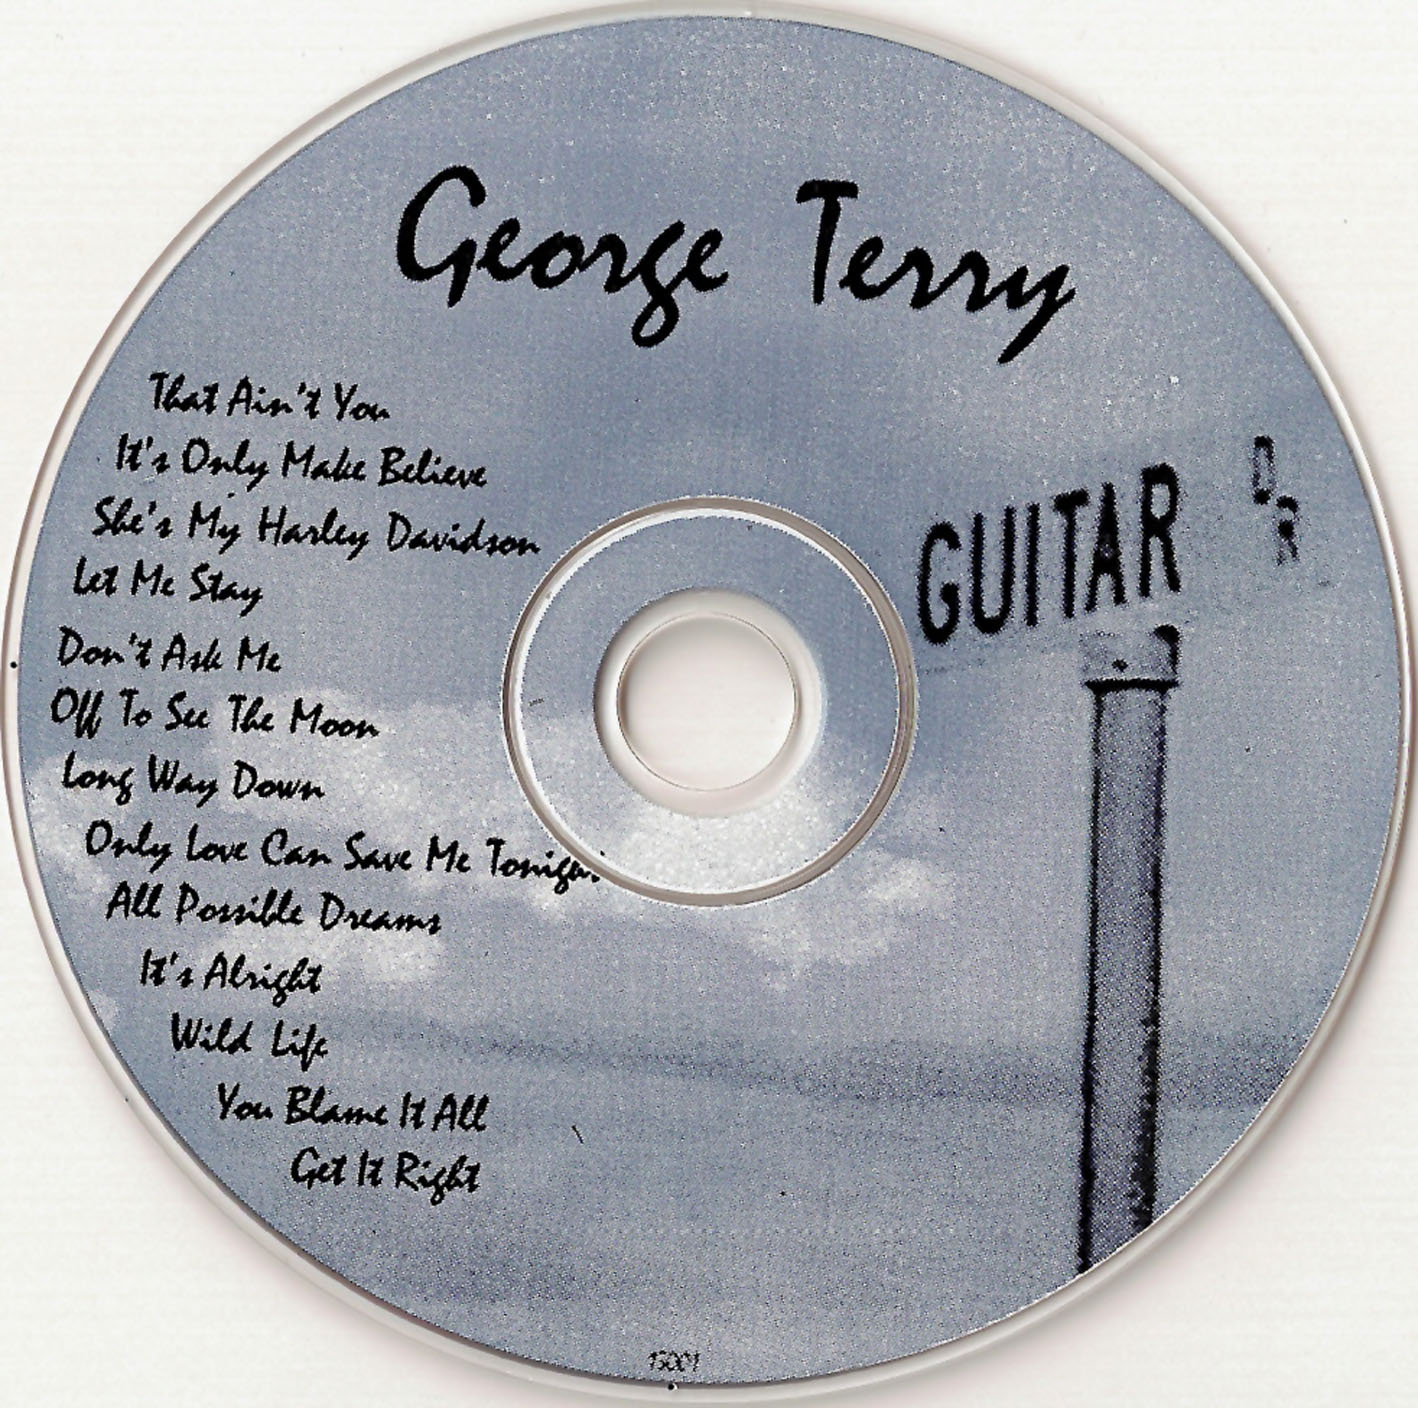 http://1.bp.blogspot.com/-4lF9KsmnQ4Q/Tjx98DfHACI/AAAAAAAAAd0/l667uUyE4j0/s1600/George+Terry+-+Guitar+Drive+%2528CD%2529.jpg